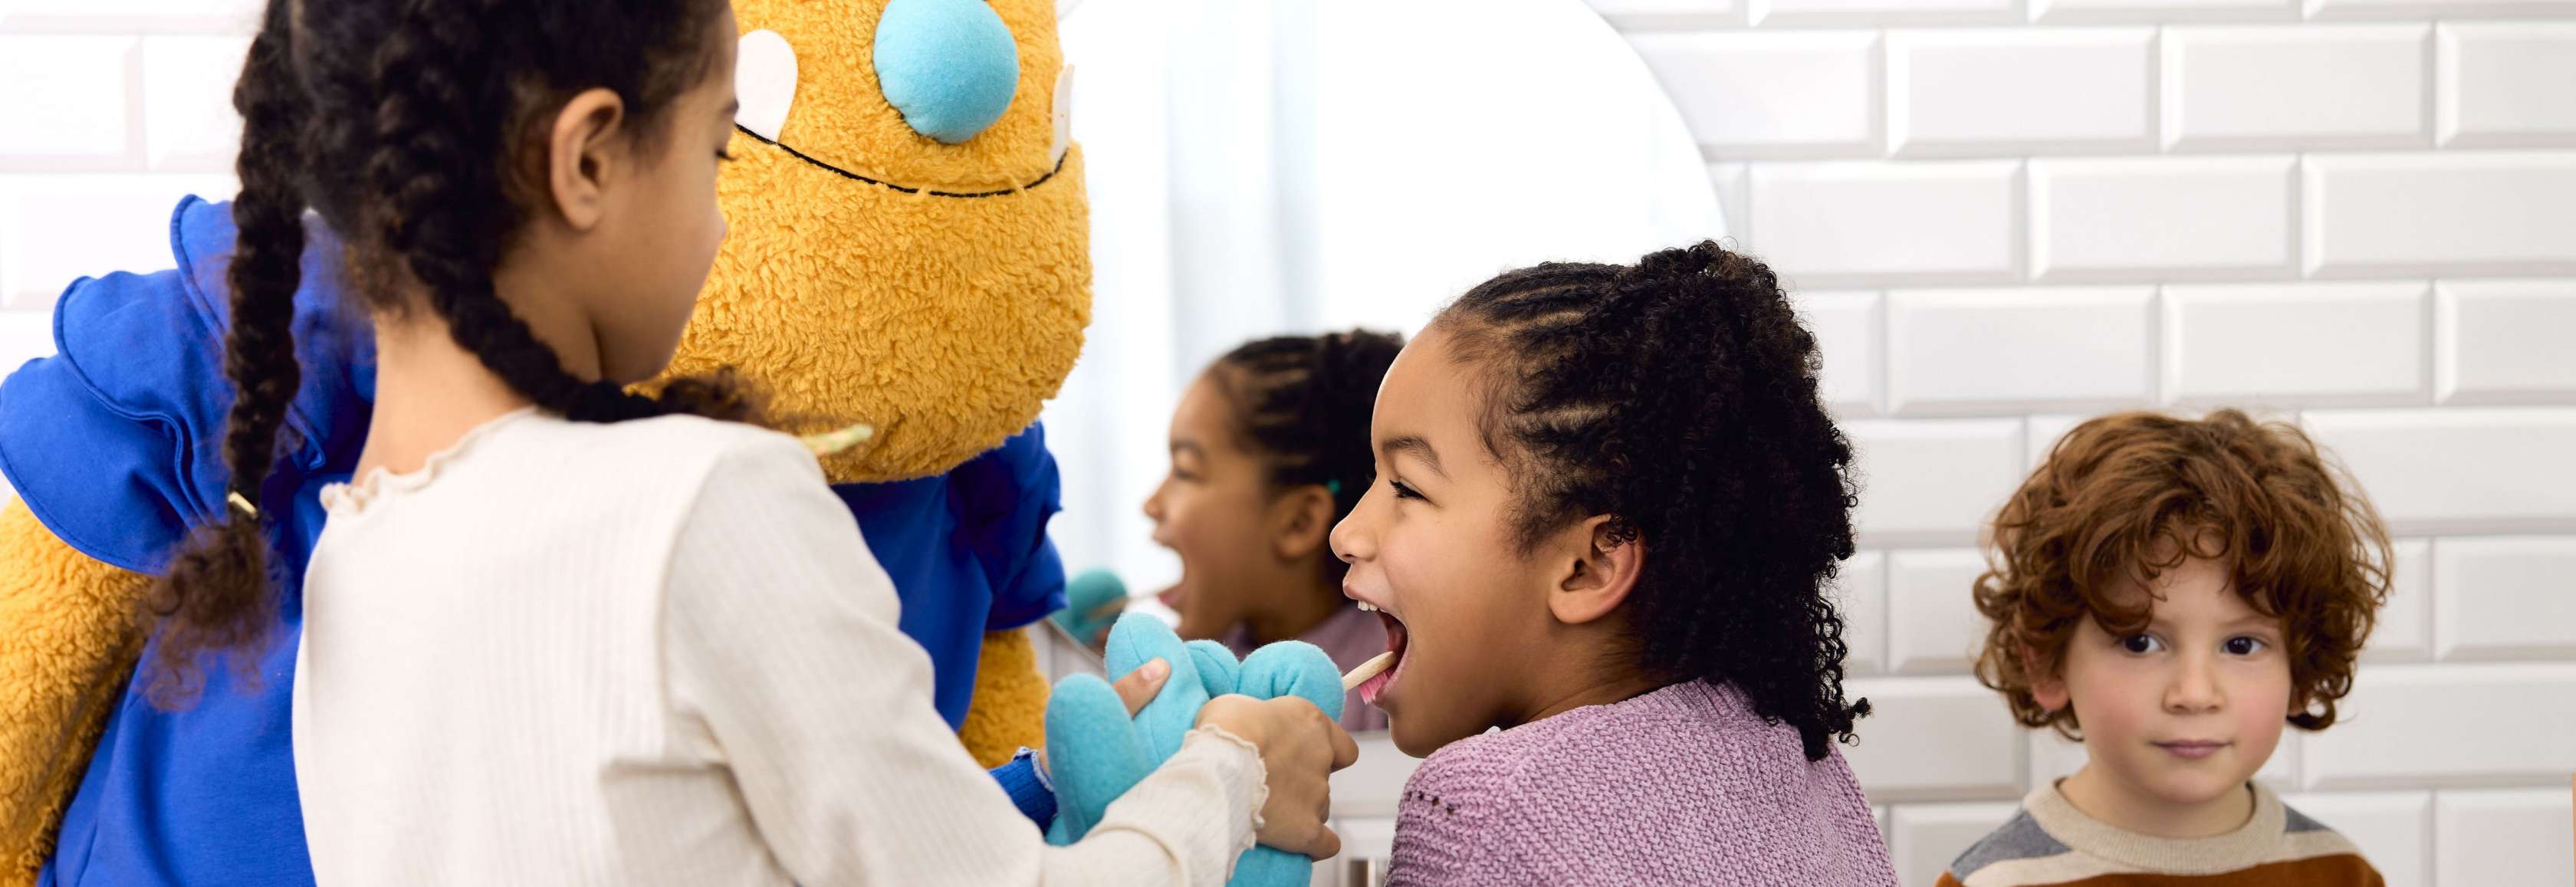 Zahnzusatzversicherung für Kinder: hier passenden Ansprechpartner finden!